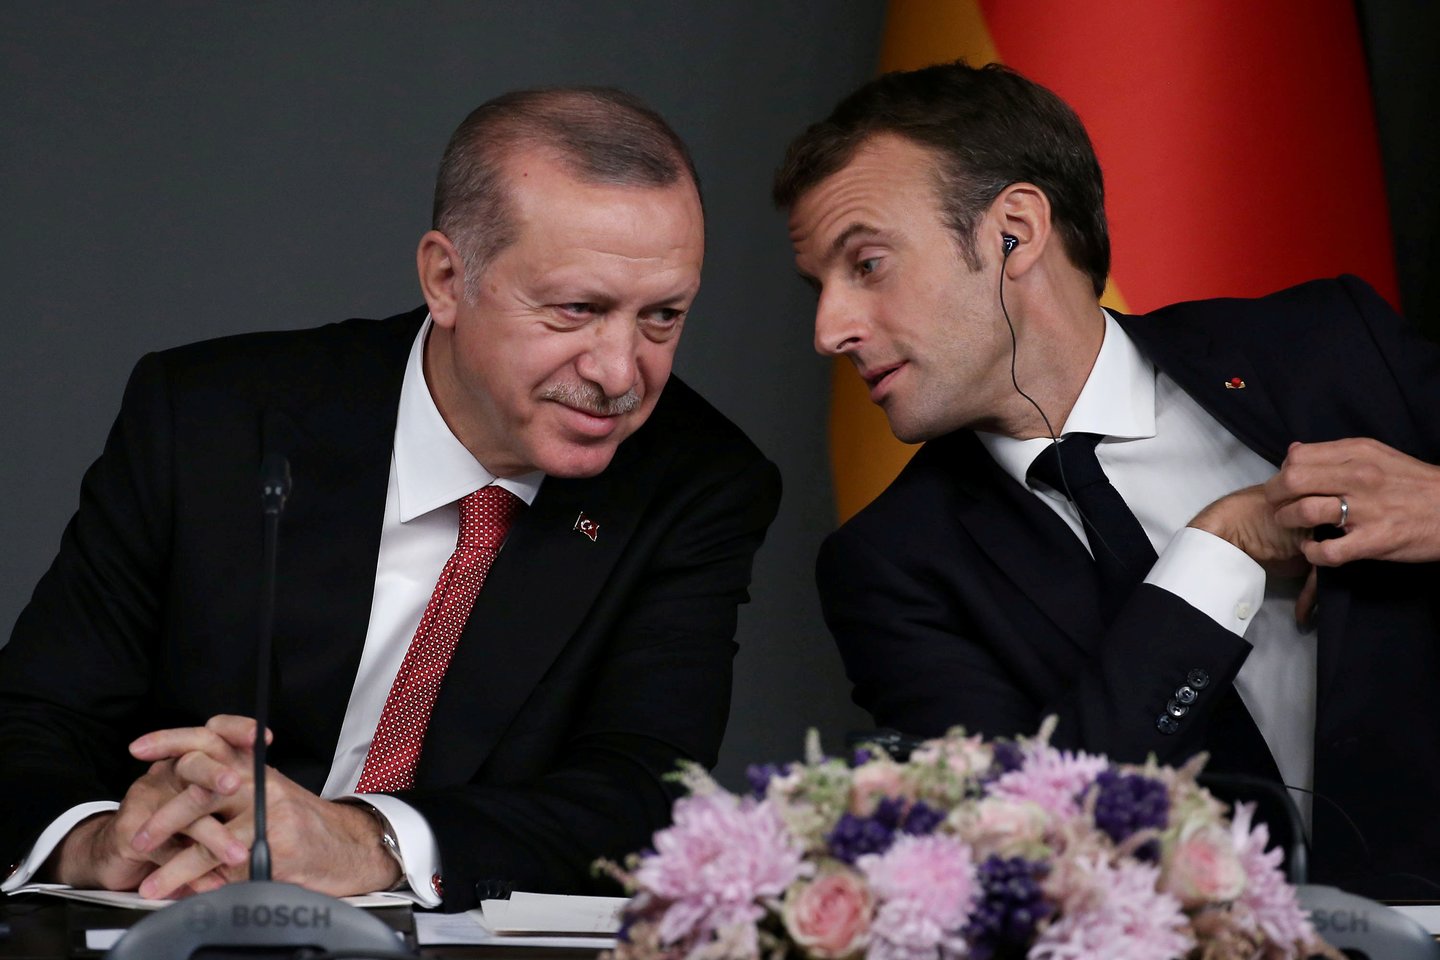  ​Turkijos prezidentas Recepas Tayyipas Erdoganas apskundė teismui prancūzų žurnalą, pavadinusį Turkijos lyderį „naikintoju“ dėl jo sprendimo pradėti operaciją prieš kurdų pajėgas Sirijoje, penktadienį pranešė žiniasklaida.<br>Reuters/Scanpix nuotr.